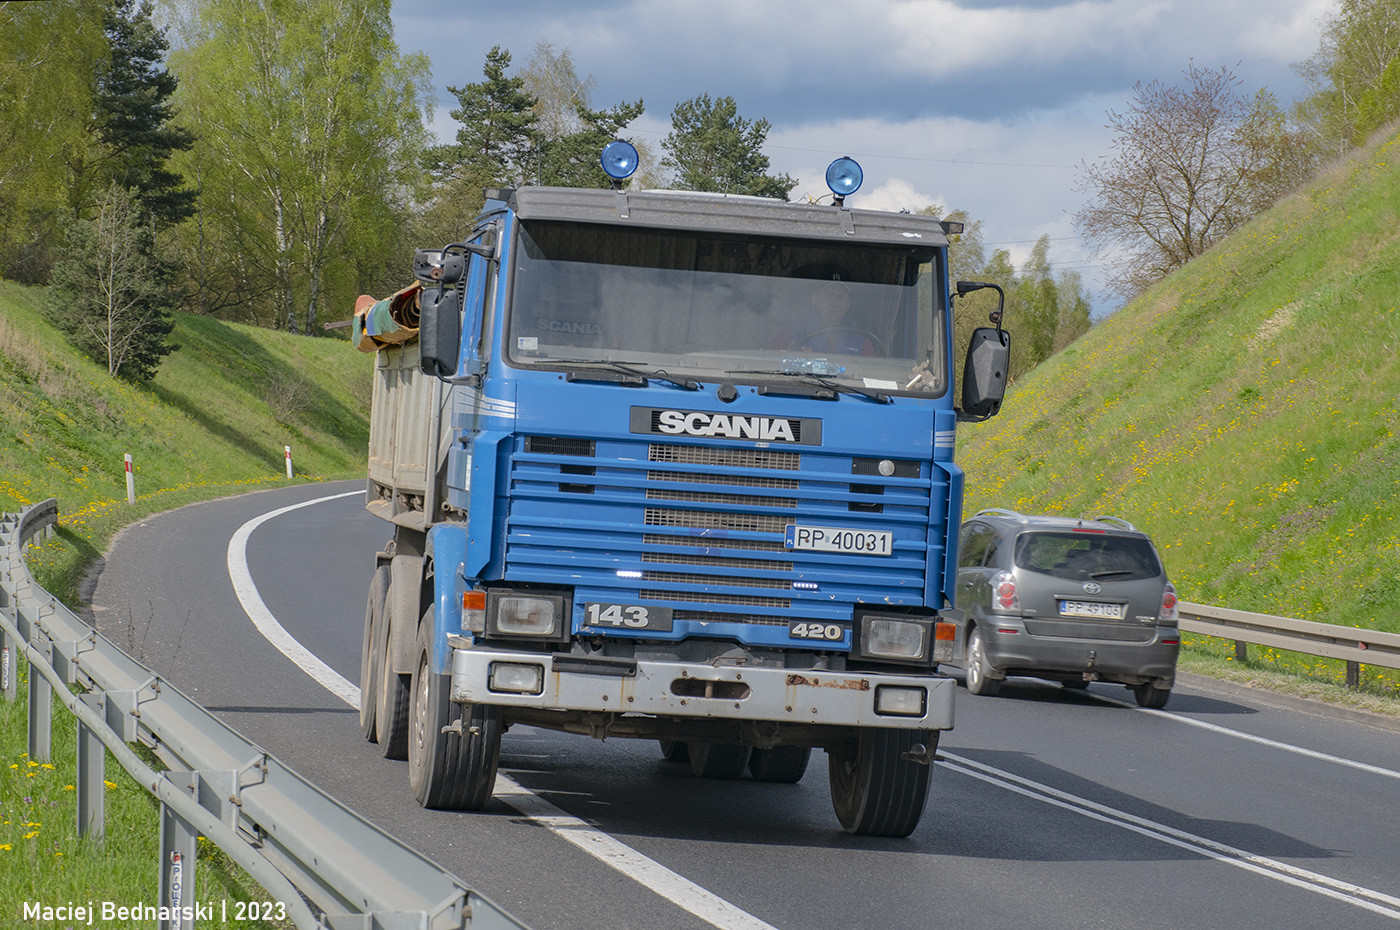 Scania R143 420 CR19 6x4 #PP 40031